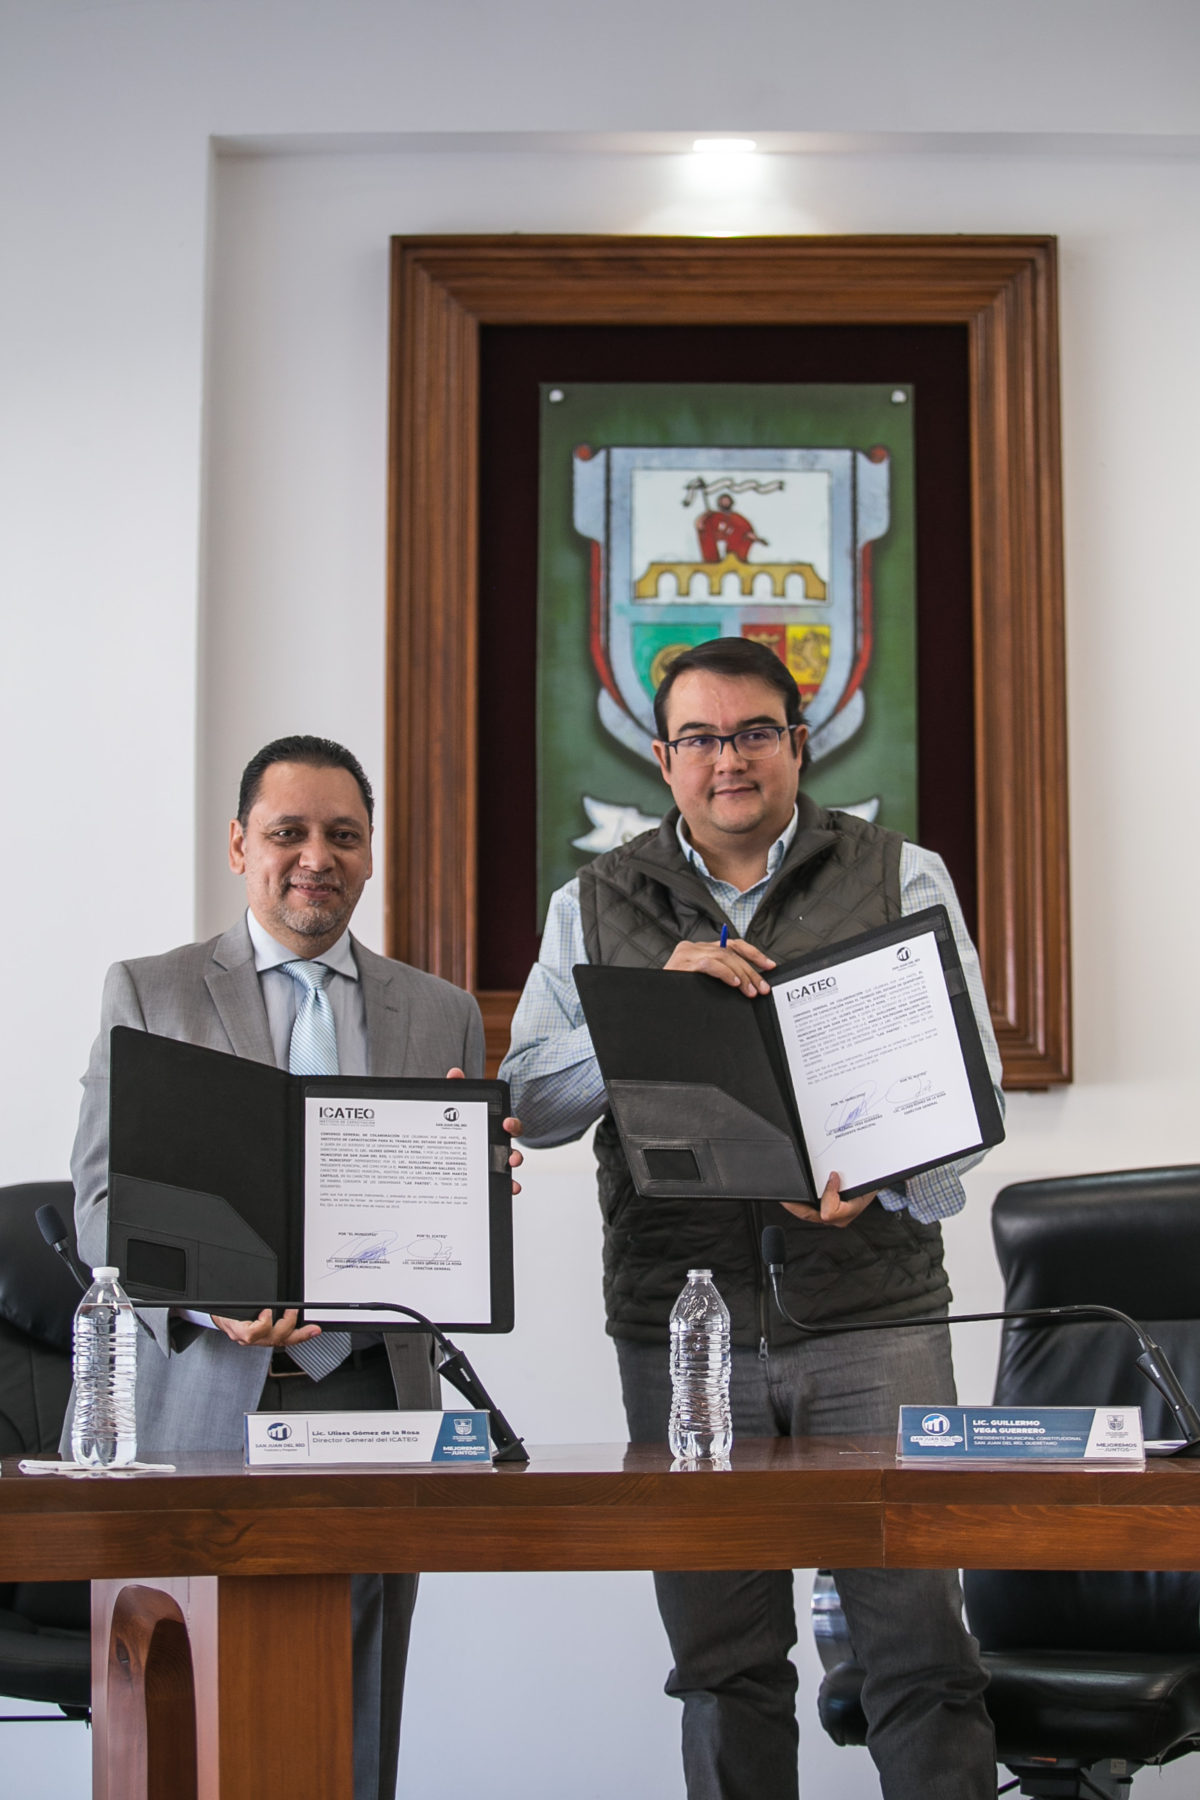 Para integración laboral: Firman convenio ICATEQ y San Juan del Rio